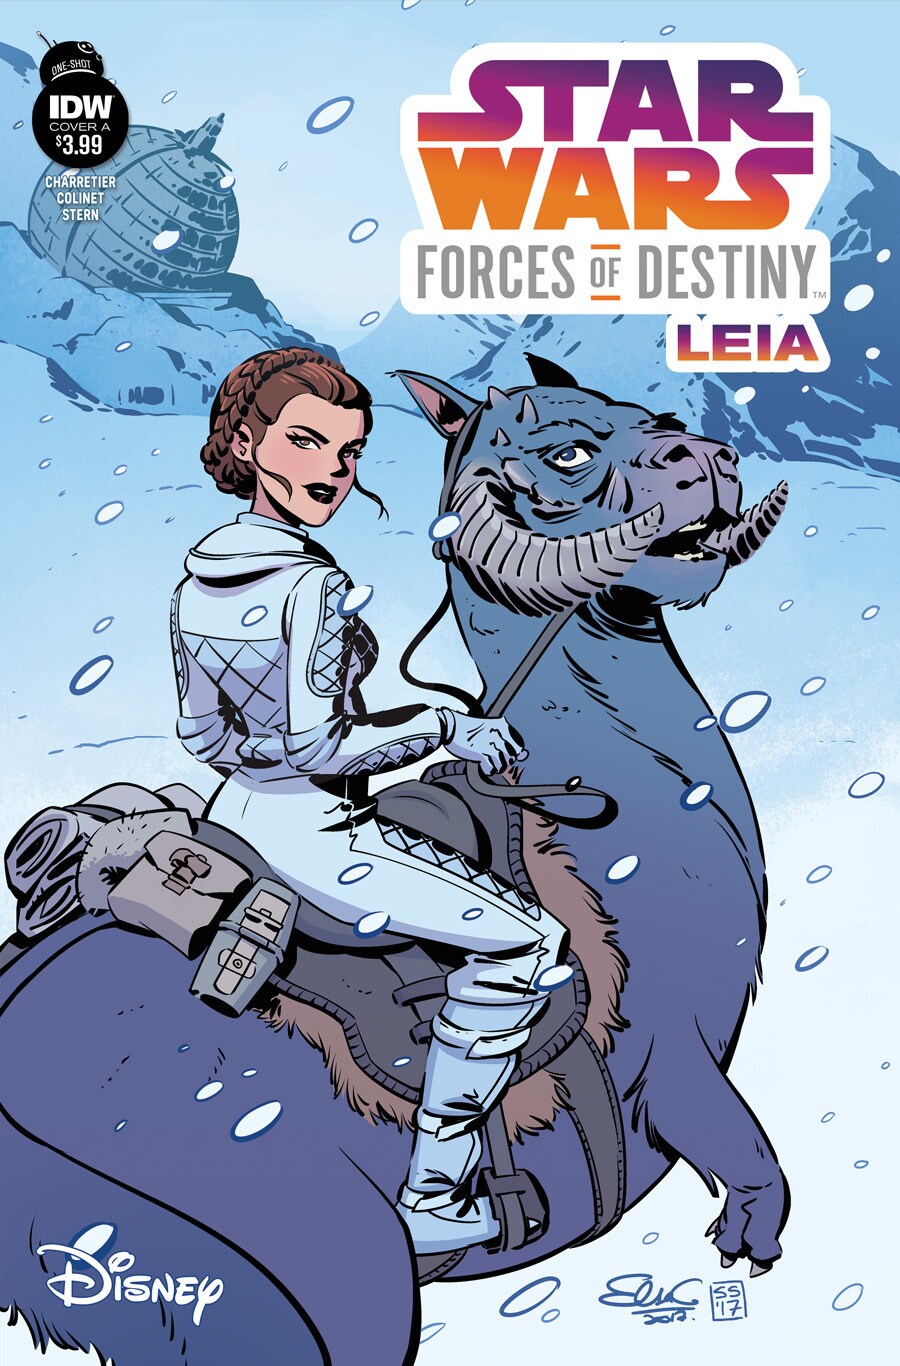 Forces of Destiny: Leia cover